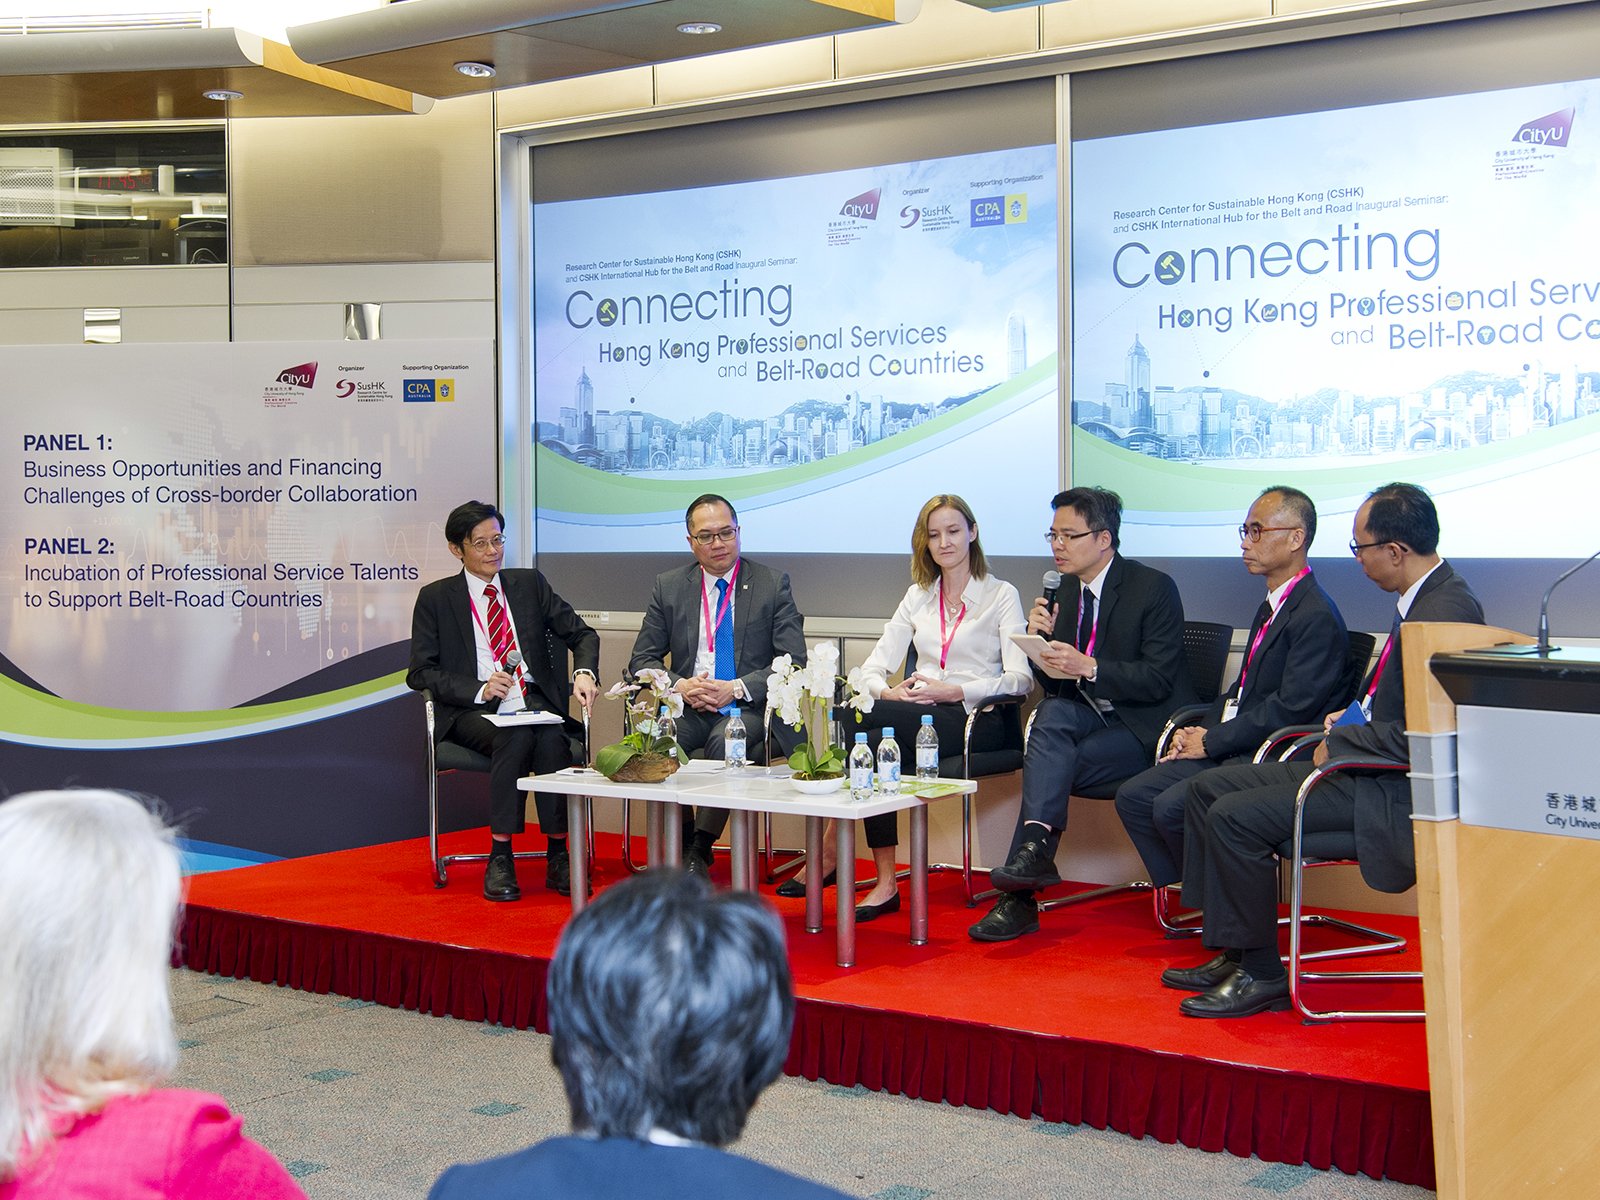 嘉賓在「連結 · 香港專業服務 · 一帶一路」開幕研討會中交換意見。